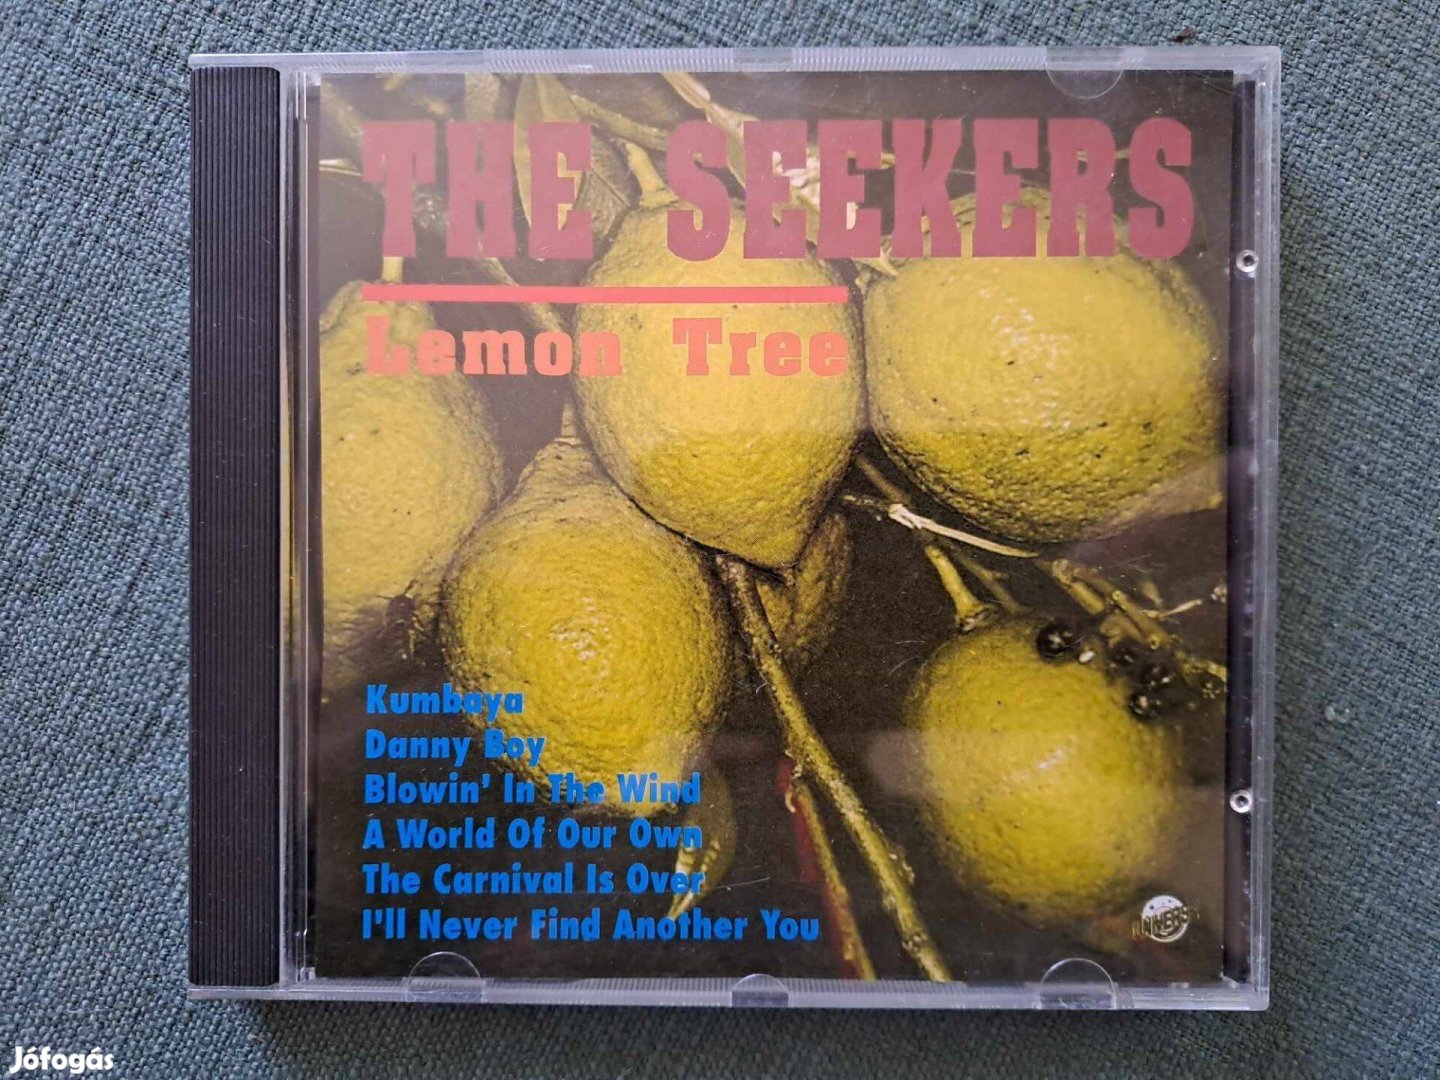 The Seekers - Lemon Tree